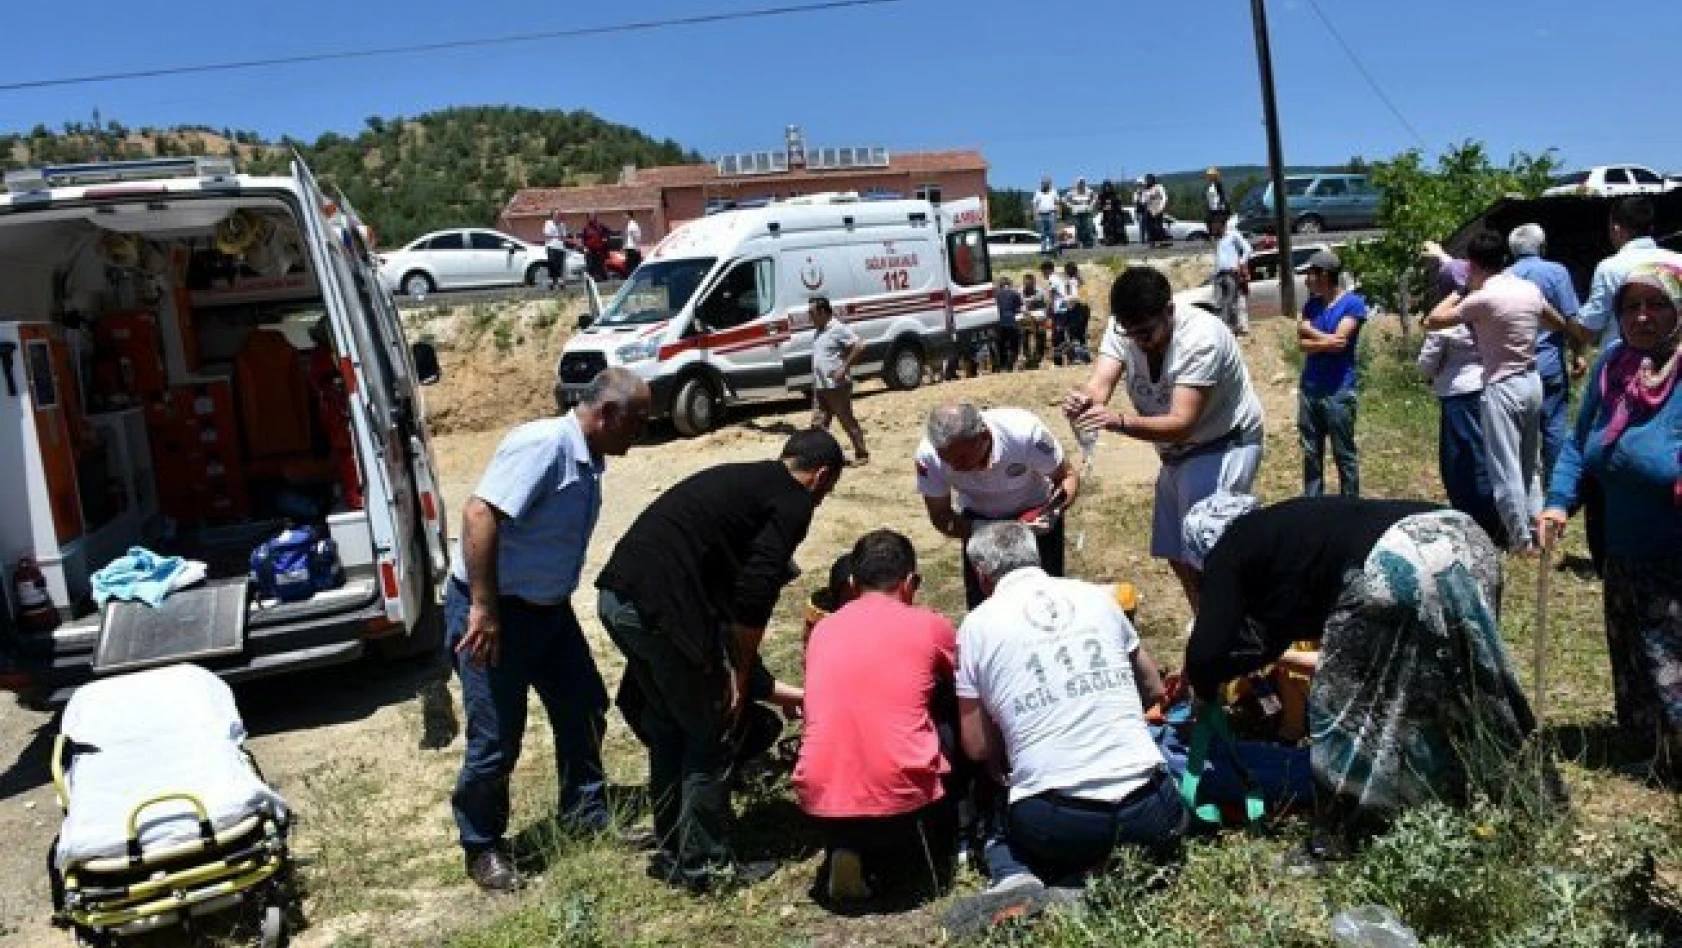 Kastamonu'da trafik kazası: 1 ölü, 5 yaralı